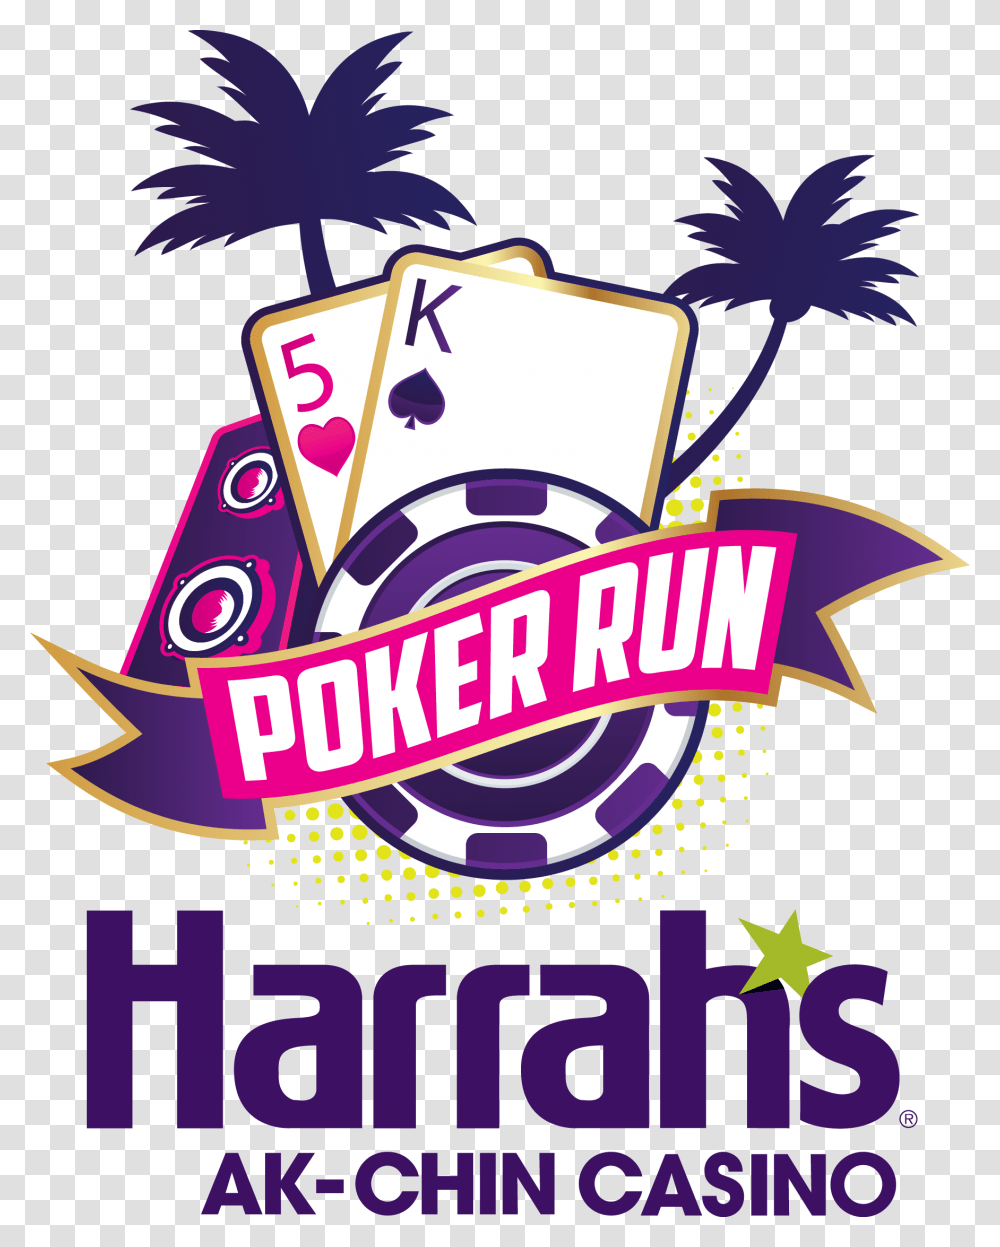 Harrahs Ak Chin Casino Poker Run, Poster, Advertisement, Flyer, Paper Transparent Png